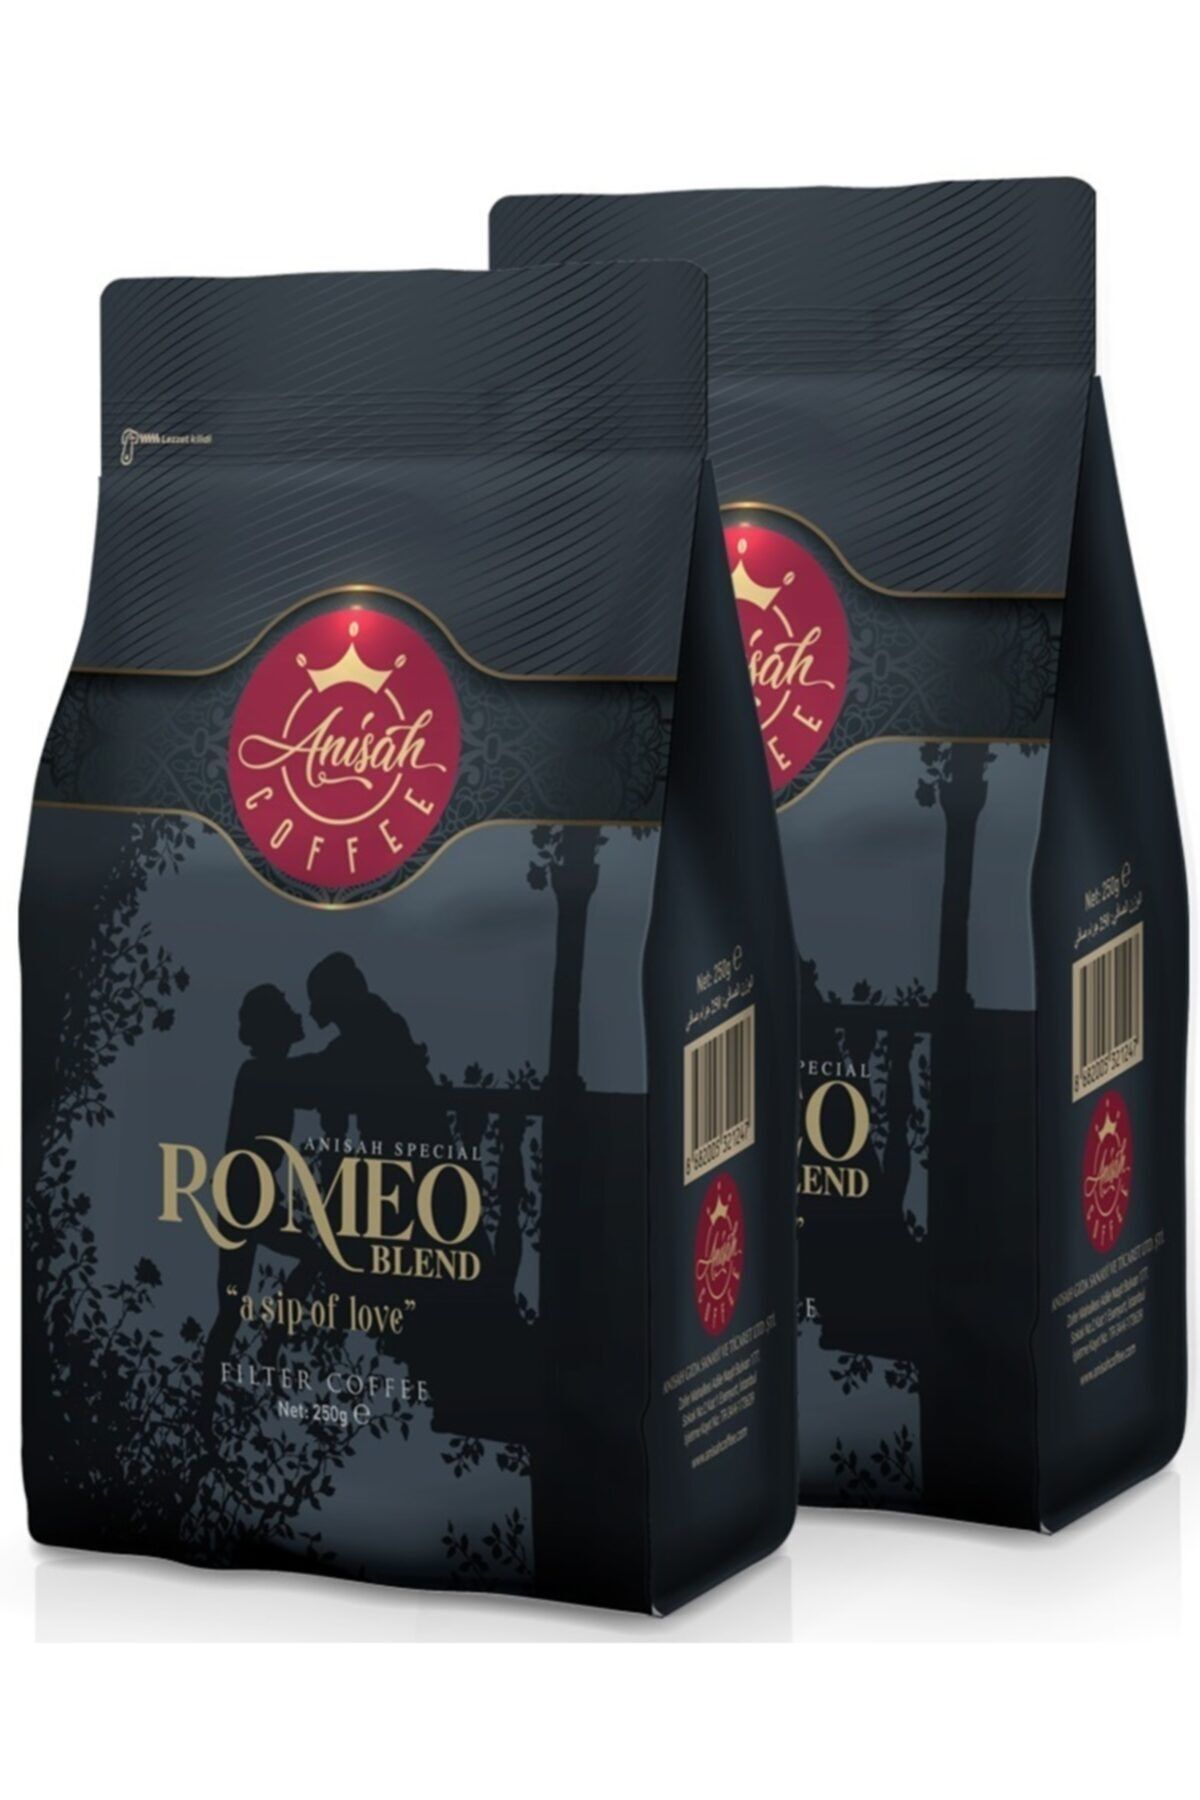 Anisah Coffee Romeo Blend Çekirdek Filtre Kahve 250 gram - 2'li Paket